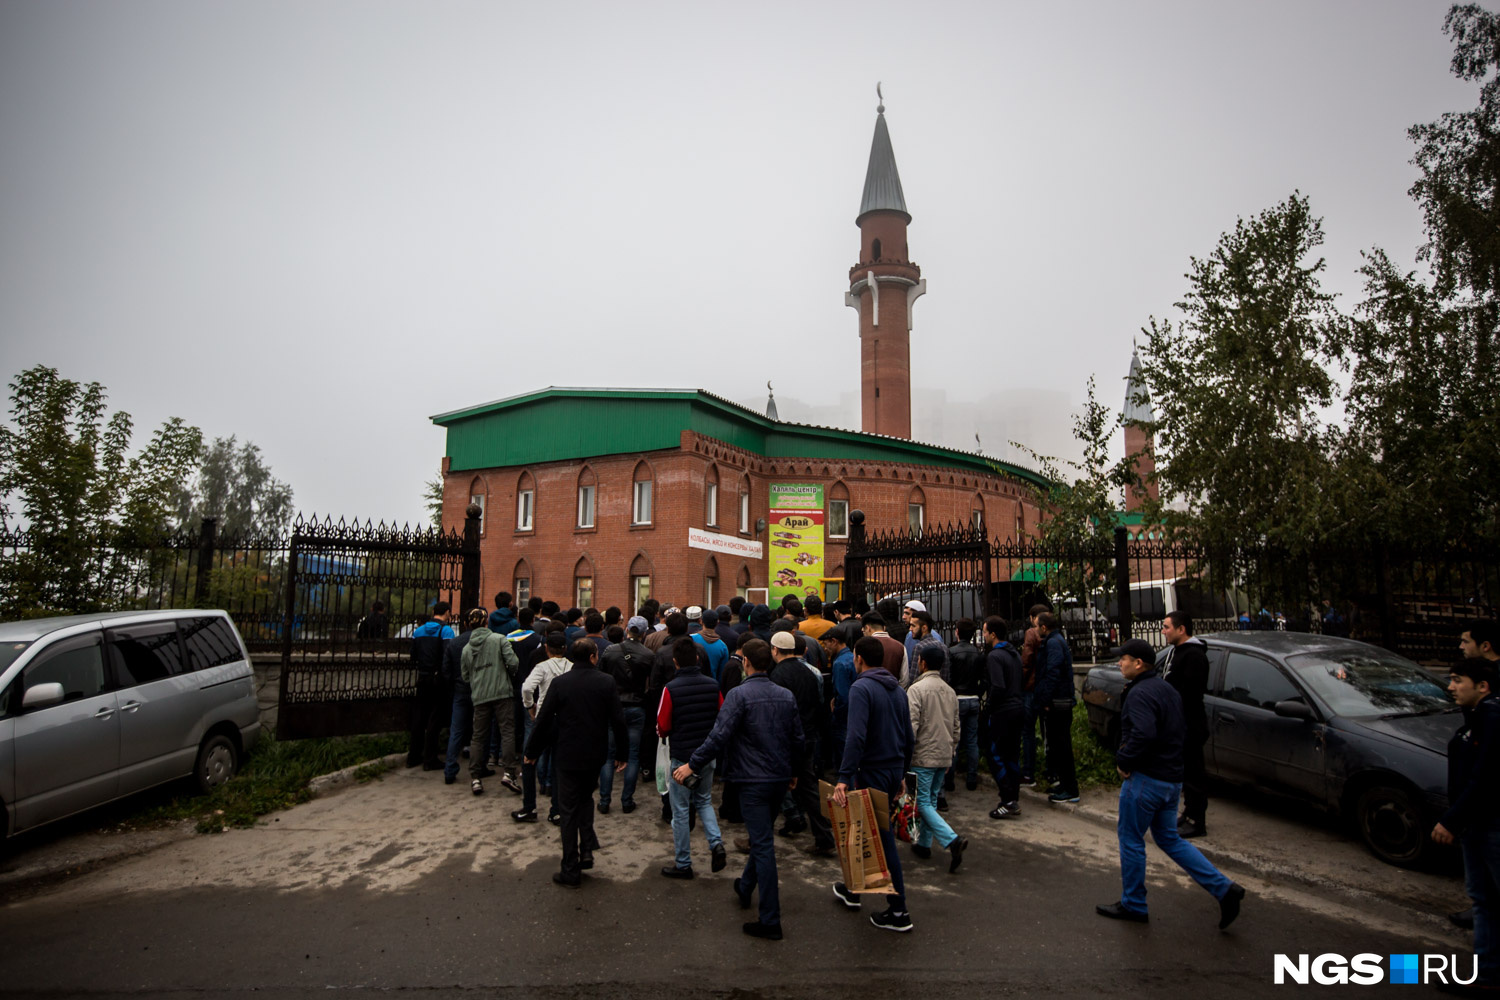 К мечети на улице Красина верующие начали подтягиваться ещё затемно, в итоге на её территории собрались сотни желающих помолиться. На входе собравшихся тщательно досматривала полиция